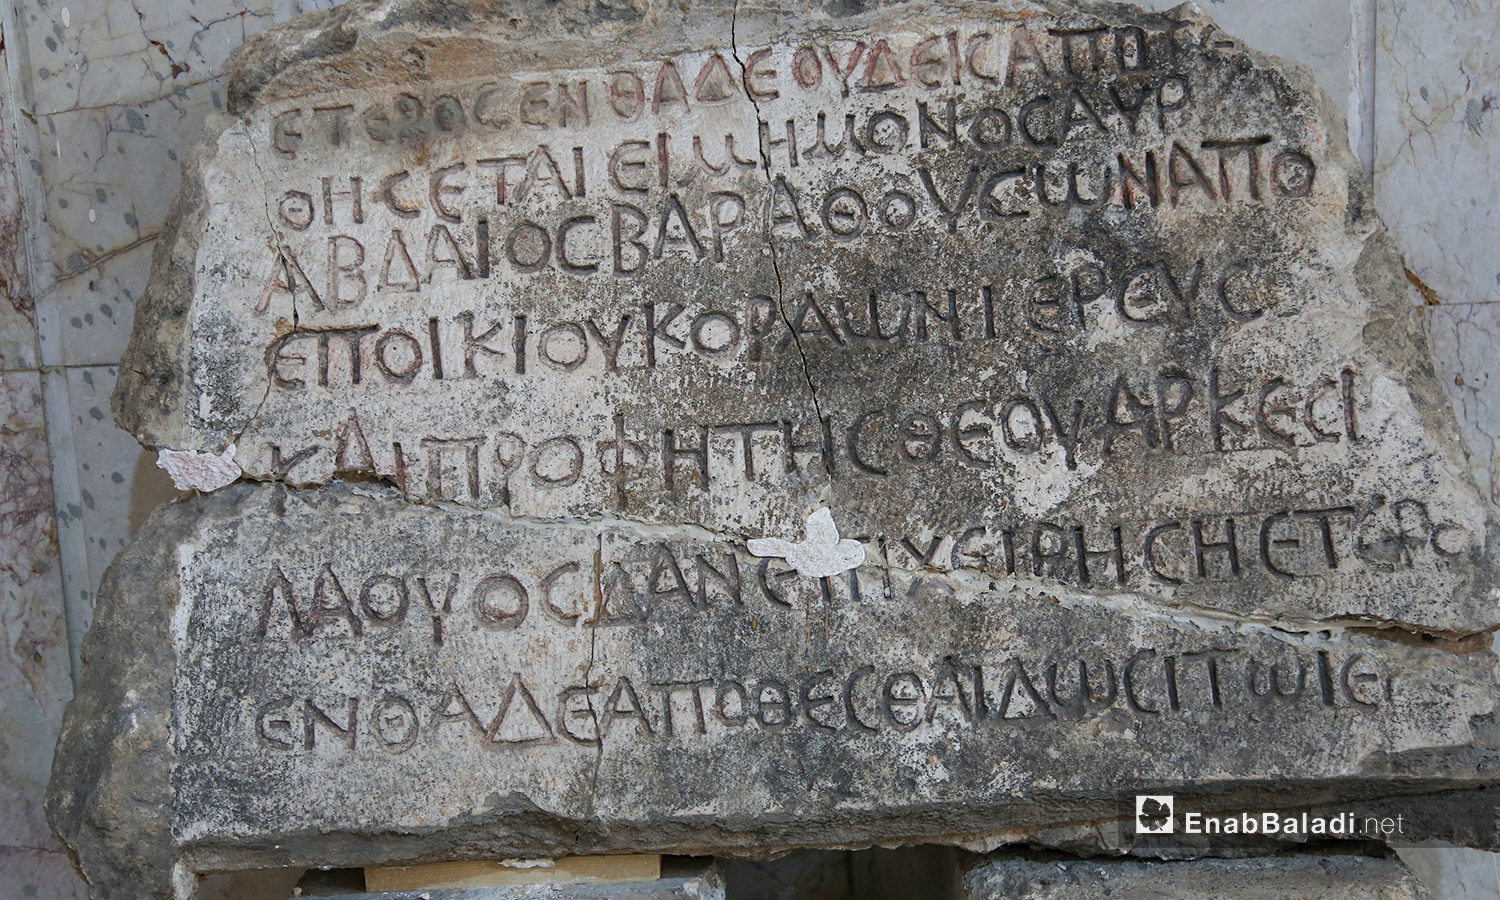 الأبجدية الإغريقية تستخدم لكتابة اللغة اليونانية منذ القرن الثامن قبل الميلاد، متحف إدلب،  شباط 2021 (عنب بلدي/ يوسف غريبي)
